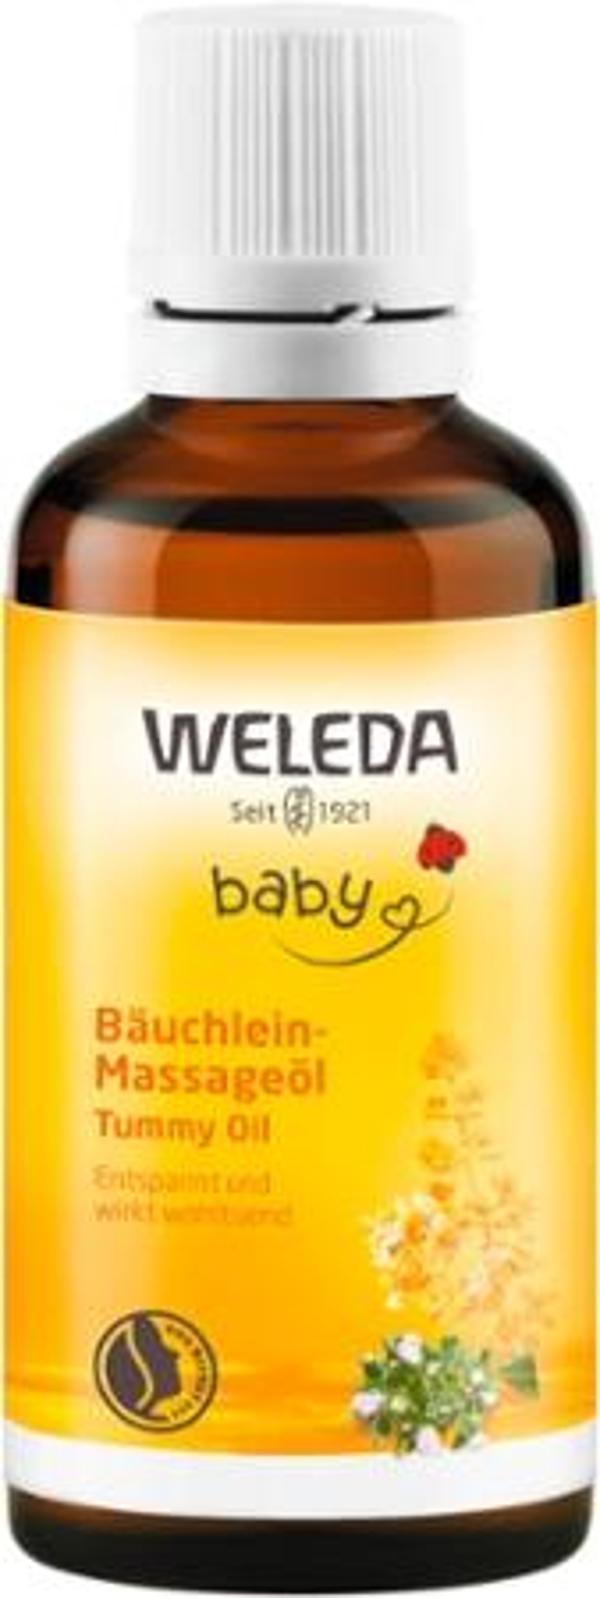 Produktfoto zu Baby Bäuchleinöl - 50 ml